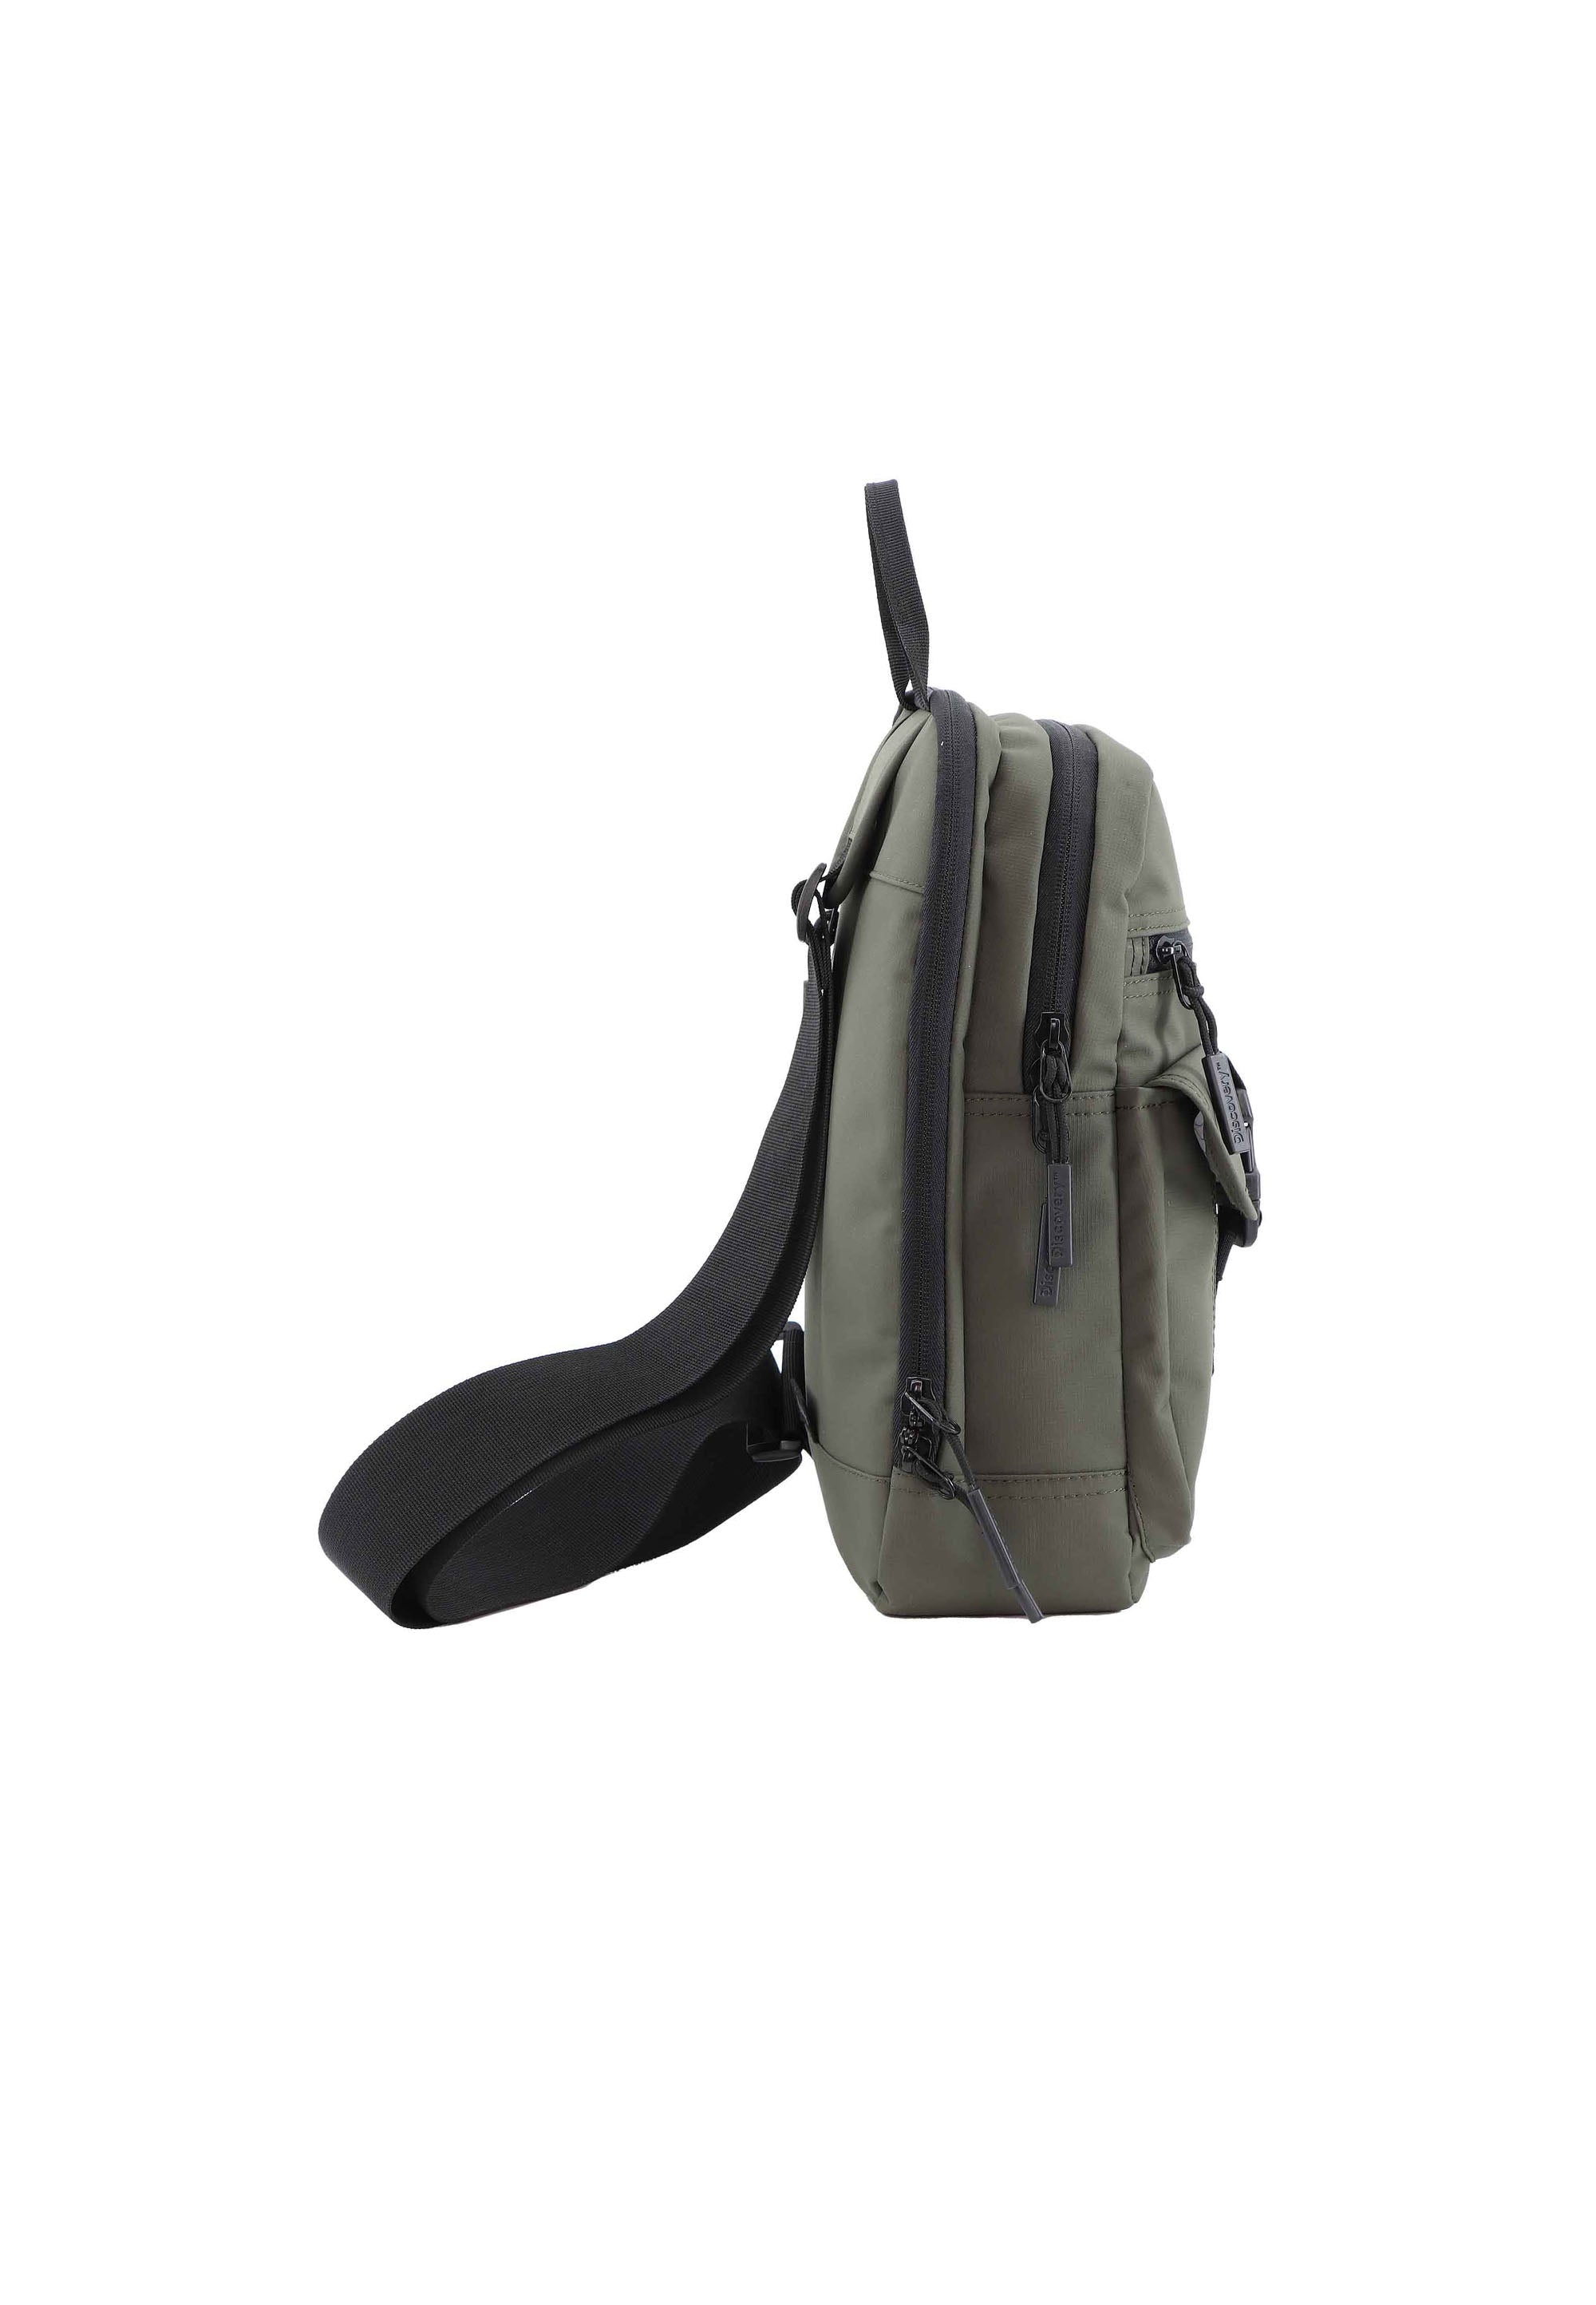 Discovery - Shield - Rucksack mit einem Riemen - 7L - Khaki